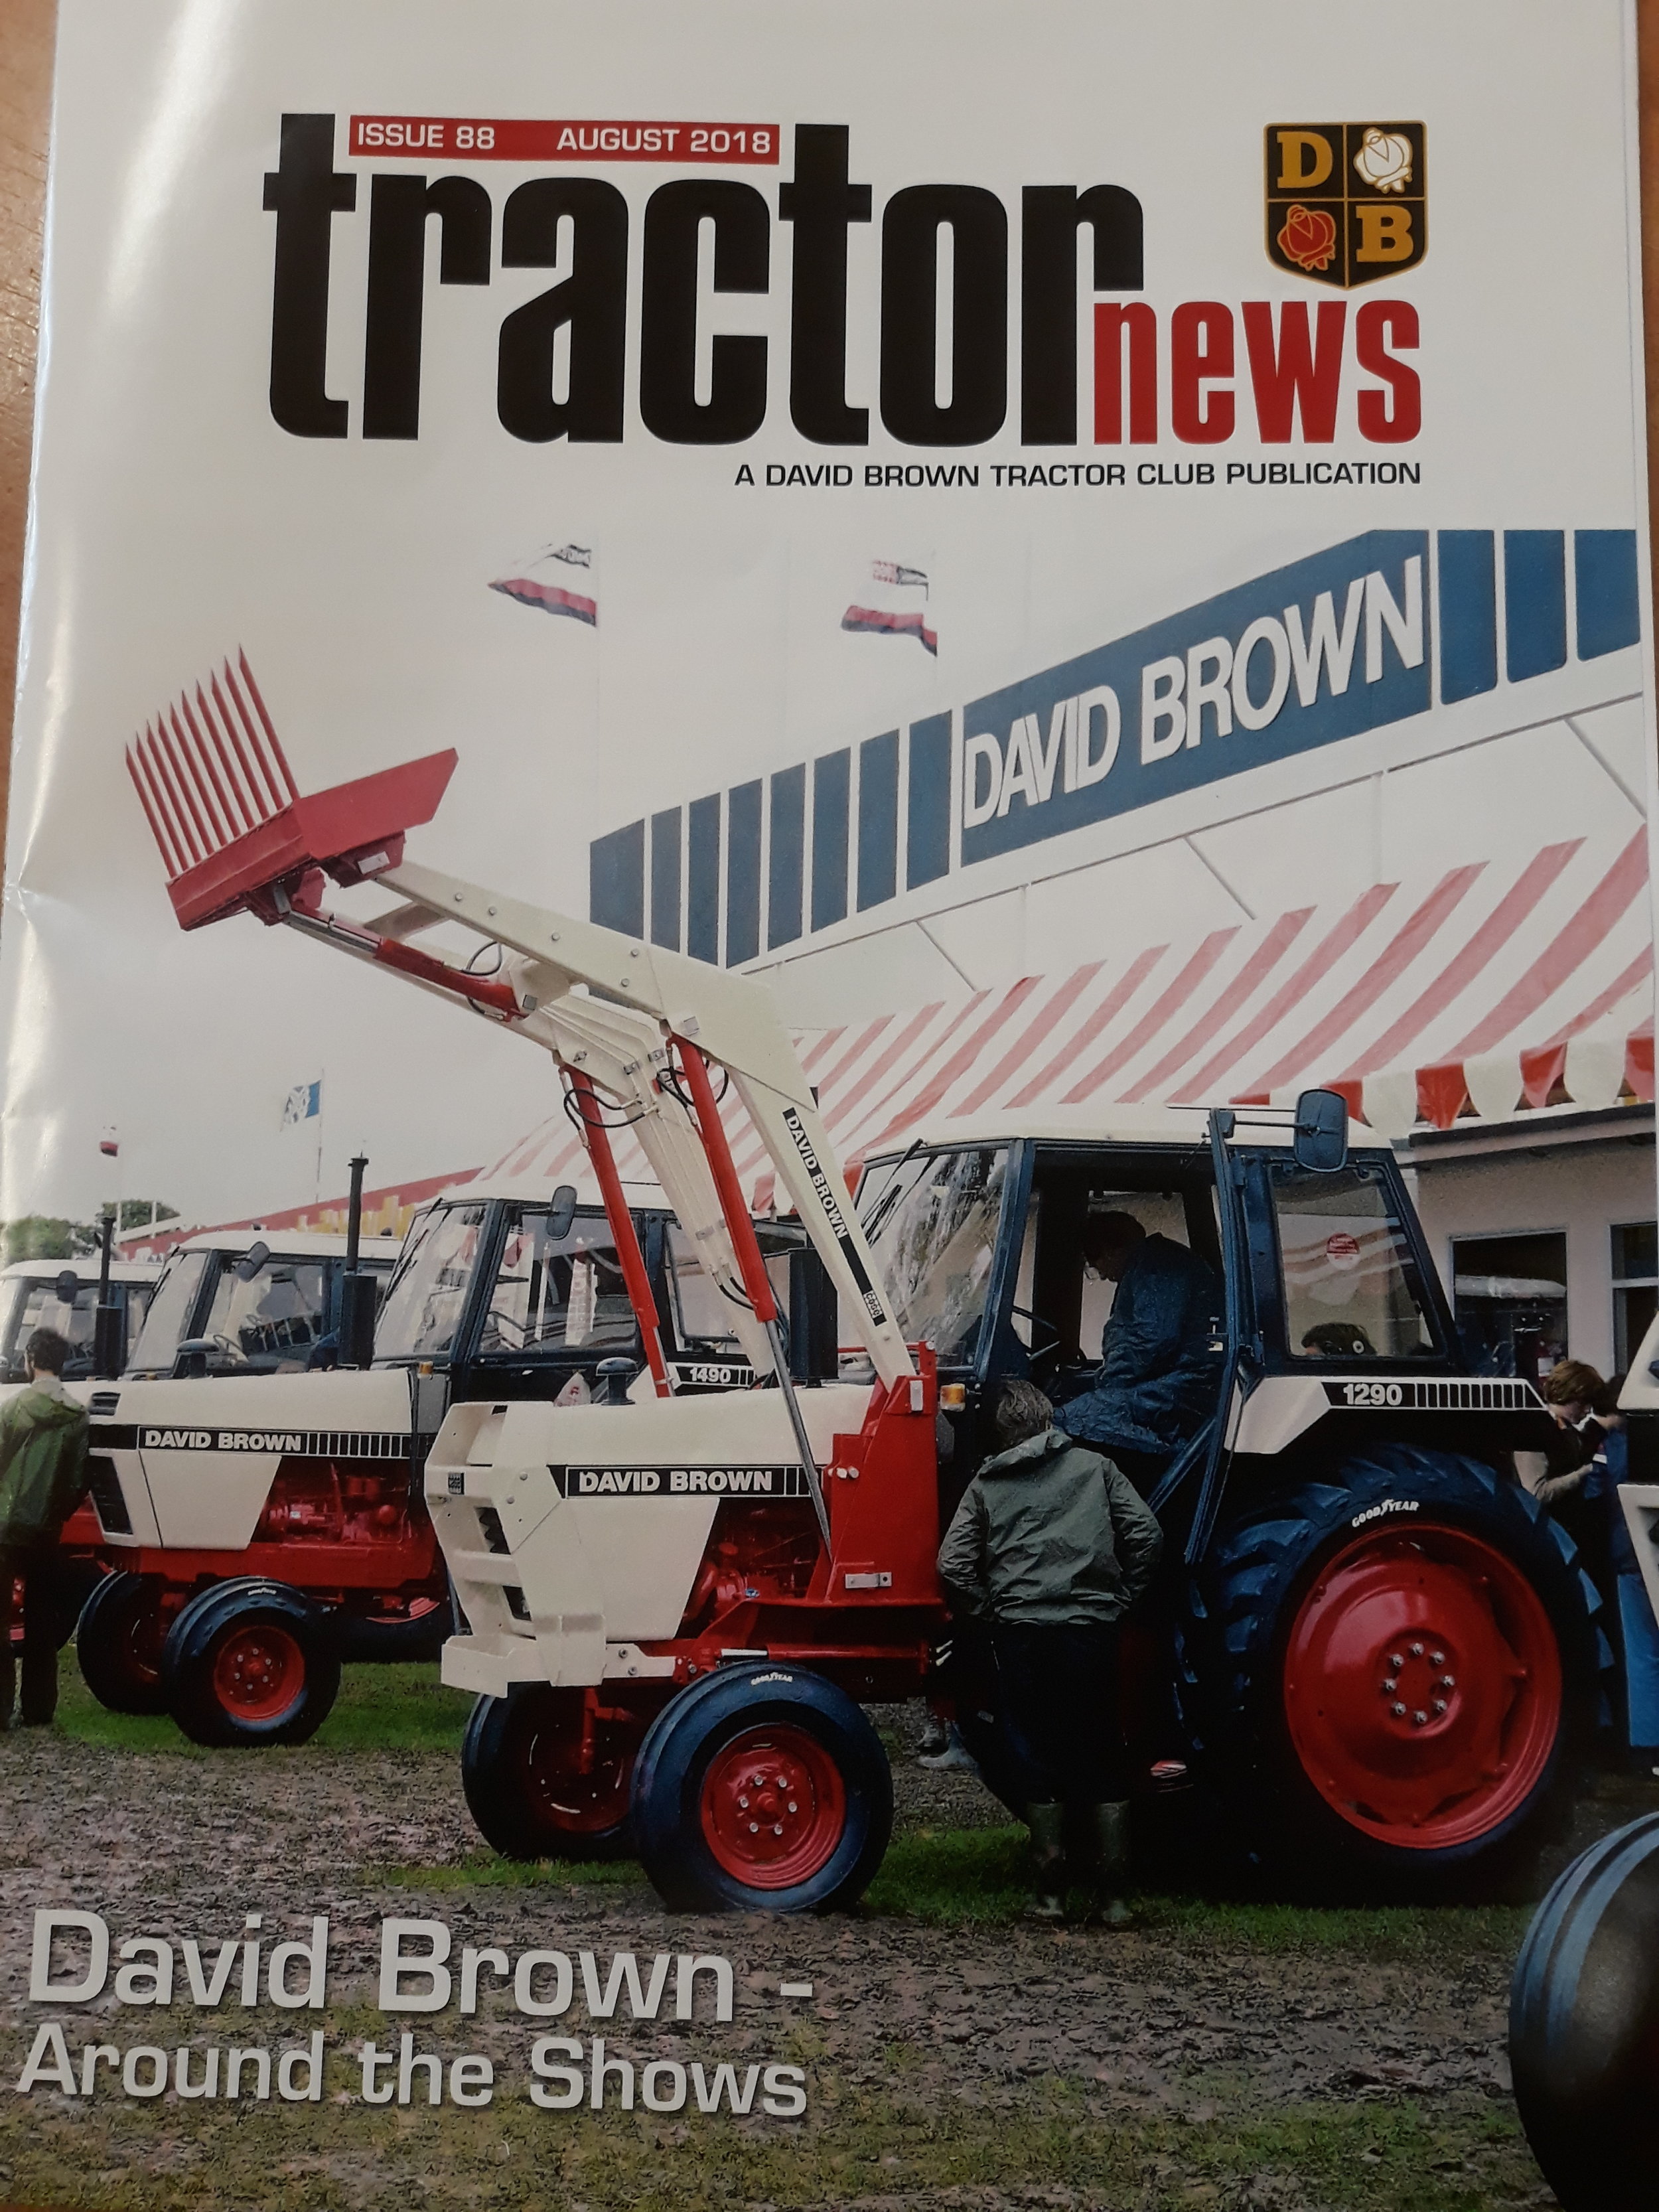 Shop — David Brown Tractor Club Shop